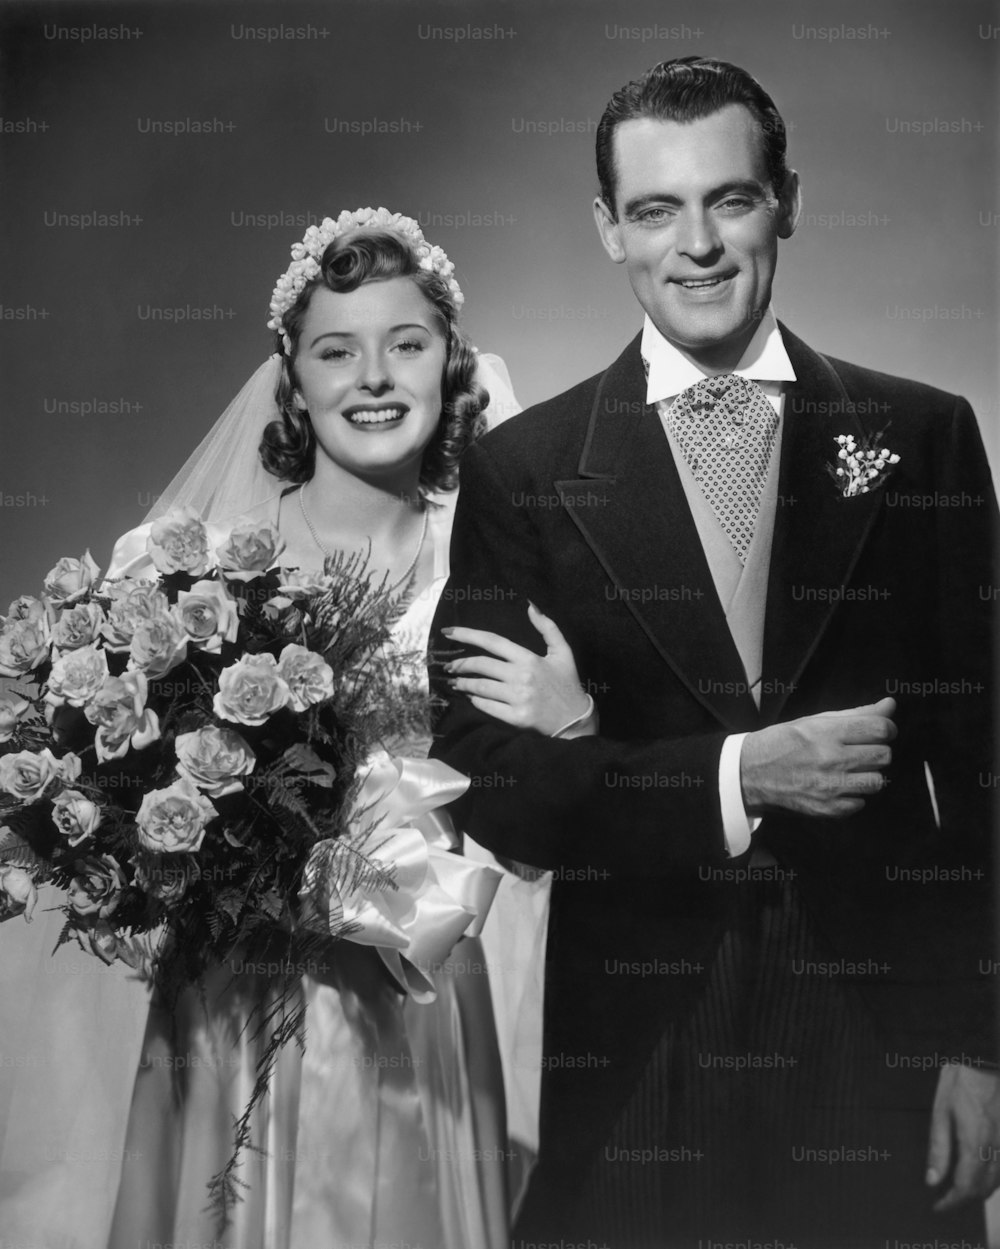 ÉTATS-UNIS - Circa 1950s : Mariés et mariés.